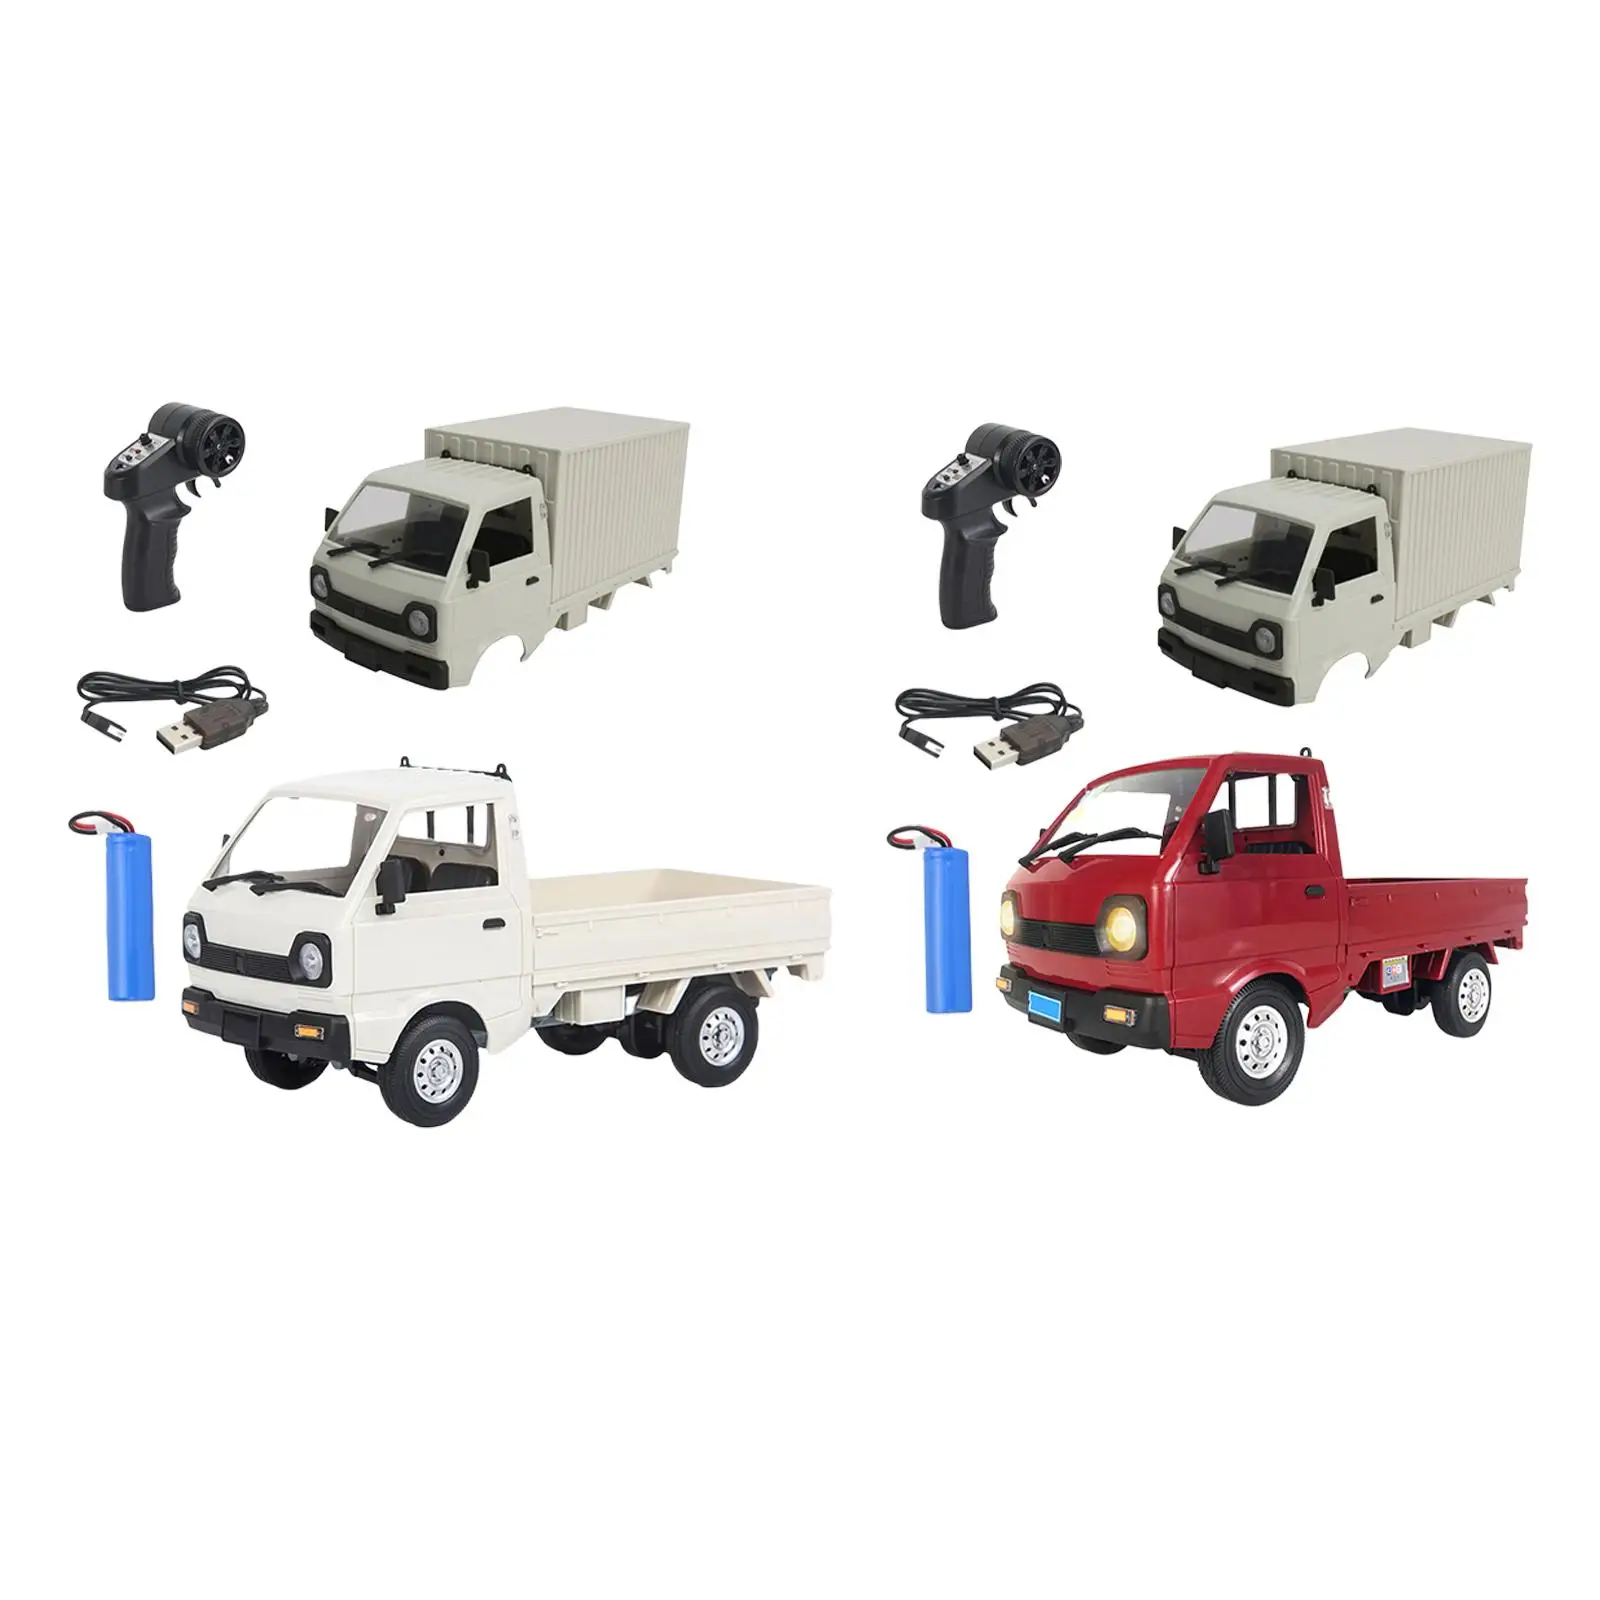 

Масштаб 1/16 D12 радиоуправляемые автомобили игрушки Радиоуправляемый грузовик 4WD электрическая имитация дрифта восхождение грузовик для детей взрослые подарки игрушки